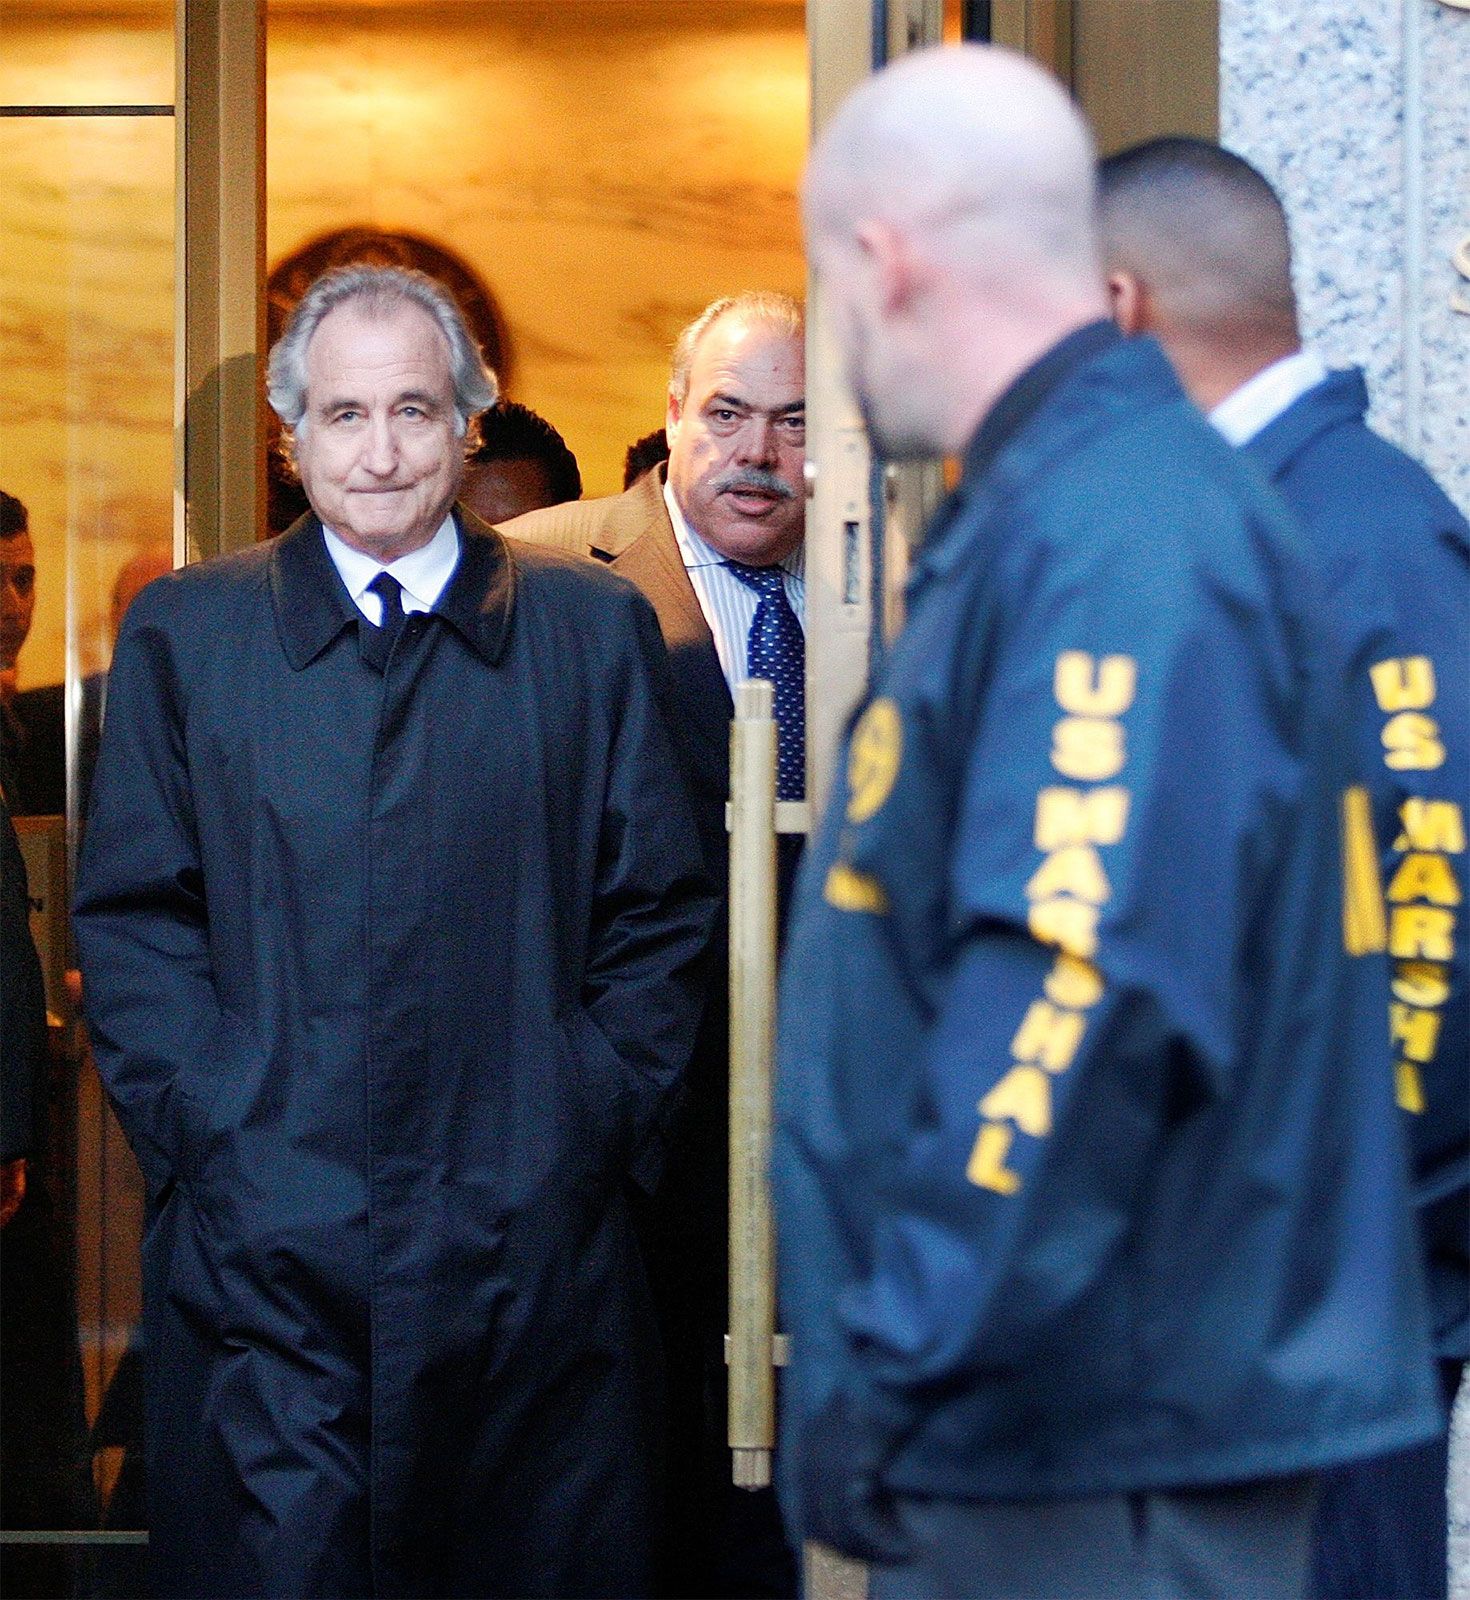 court-Bernie-Madoff-bail-hearing-New-York-2009.jpg